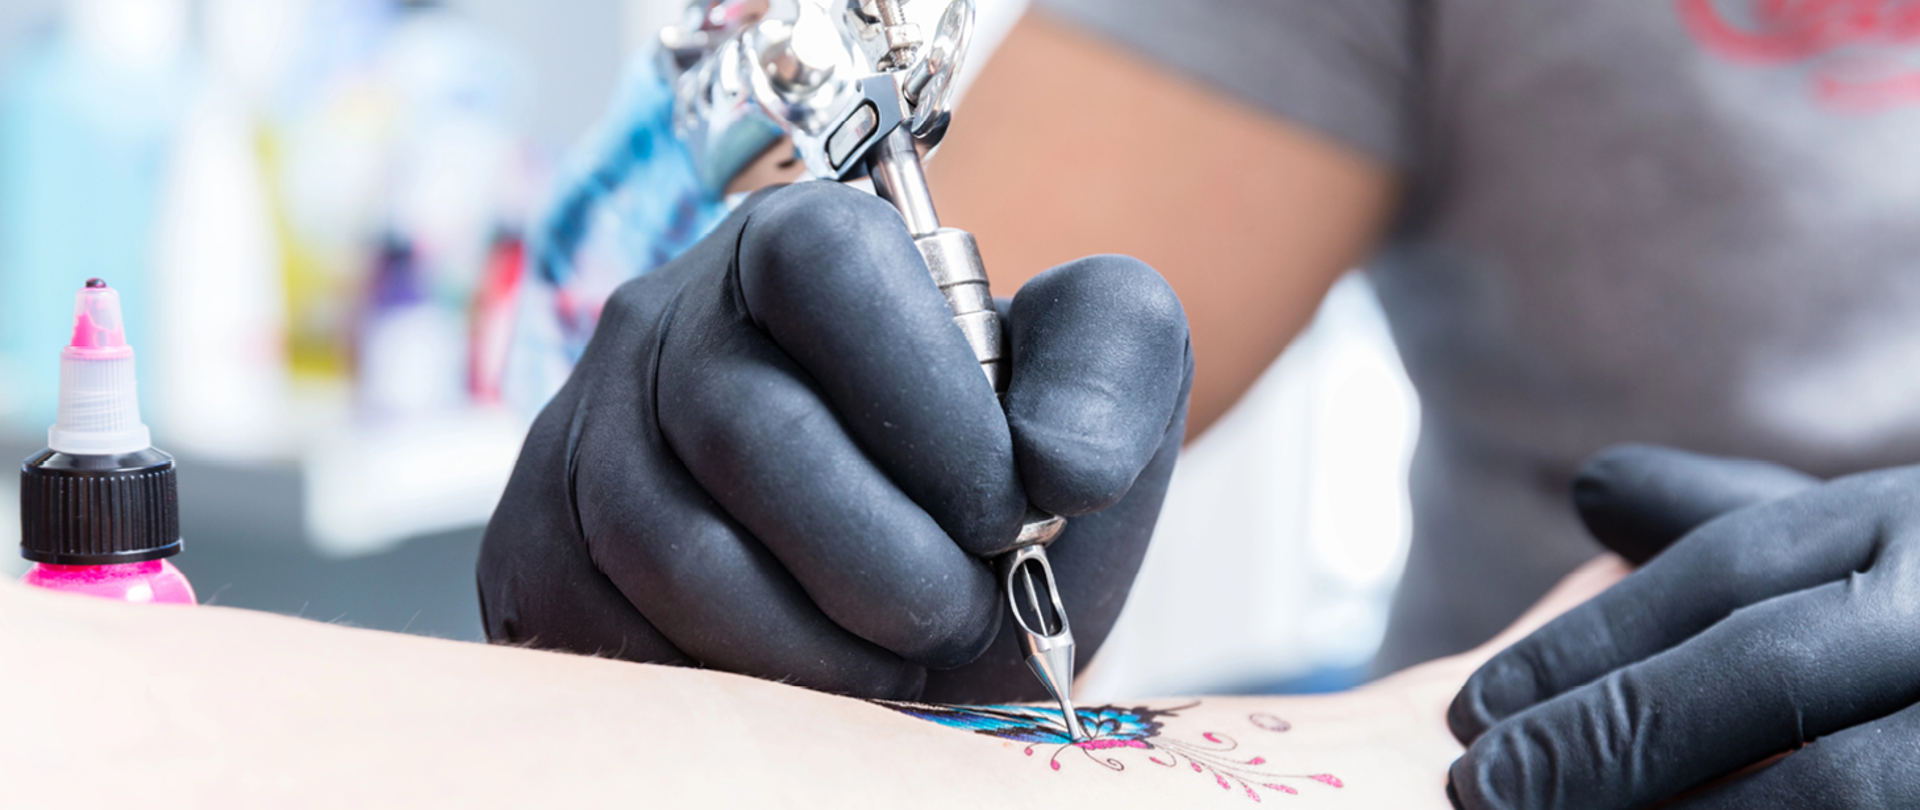 dwie ręce tatuażysty w czarnych lateksowych rękawiczka. W lewej ręce trzyma maszynkę do tatuażu. Pod ręką tatuażysty część ciała tatuowanej osoby, w tle buteleczka z farbą w kolorze różowym